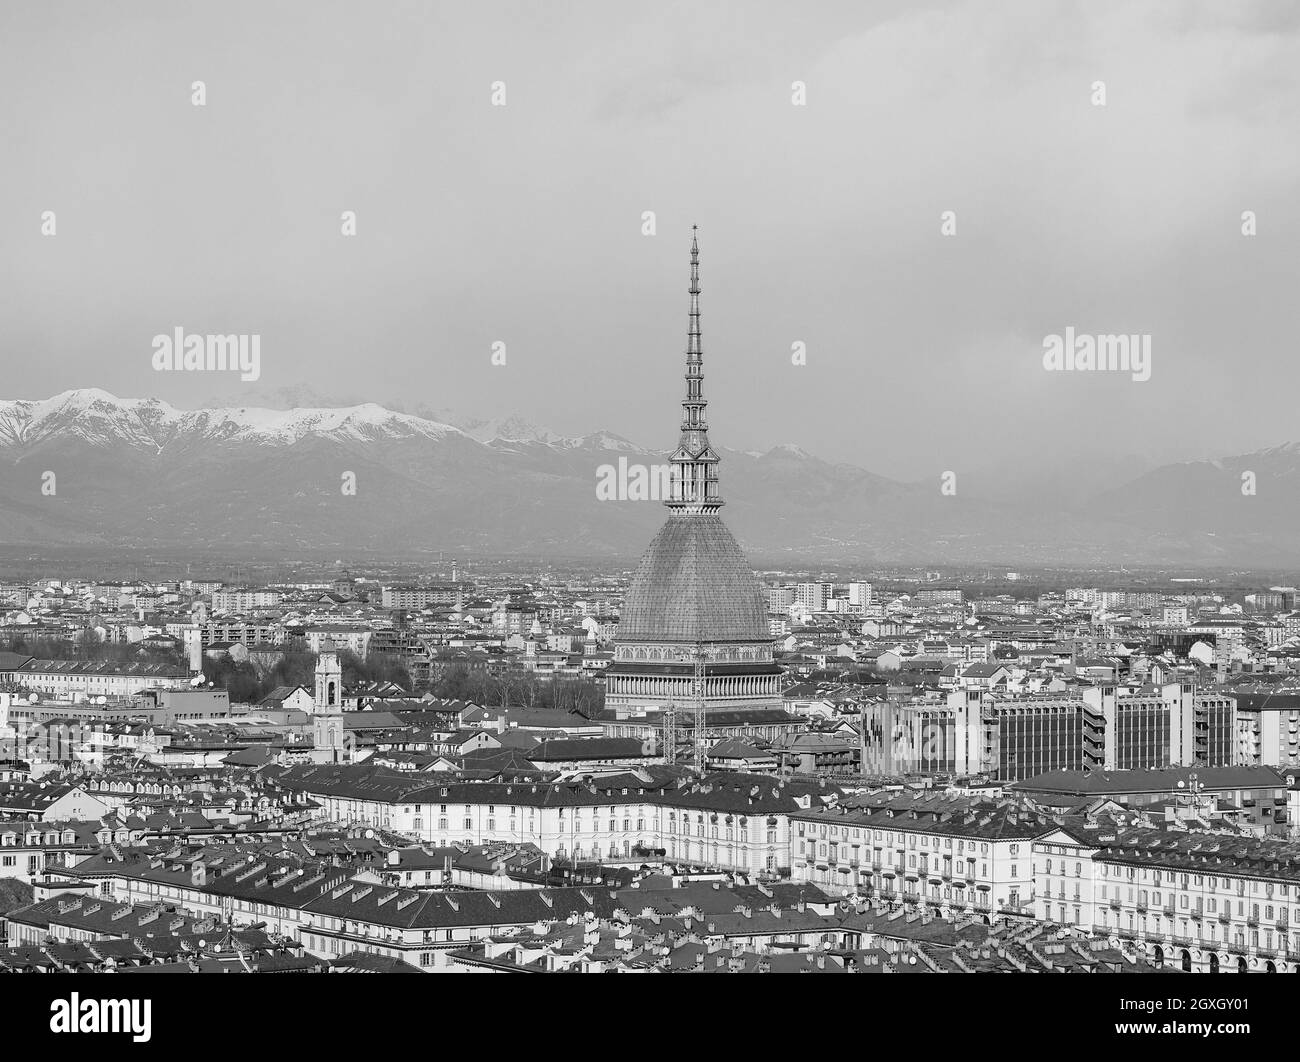 Vista aérea de la ciudad de Turín, Italia en blanco y negro Foto de stock